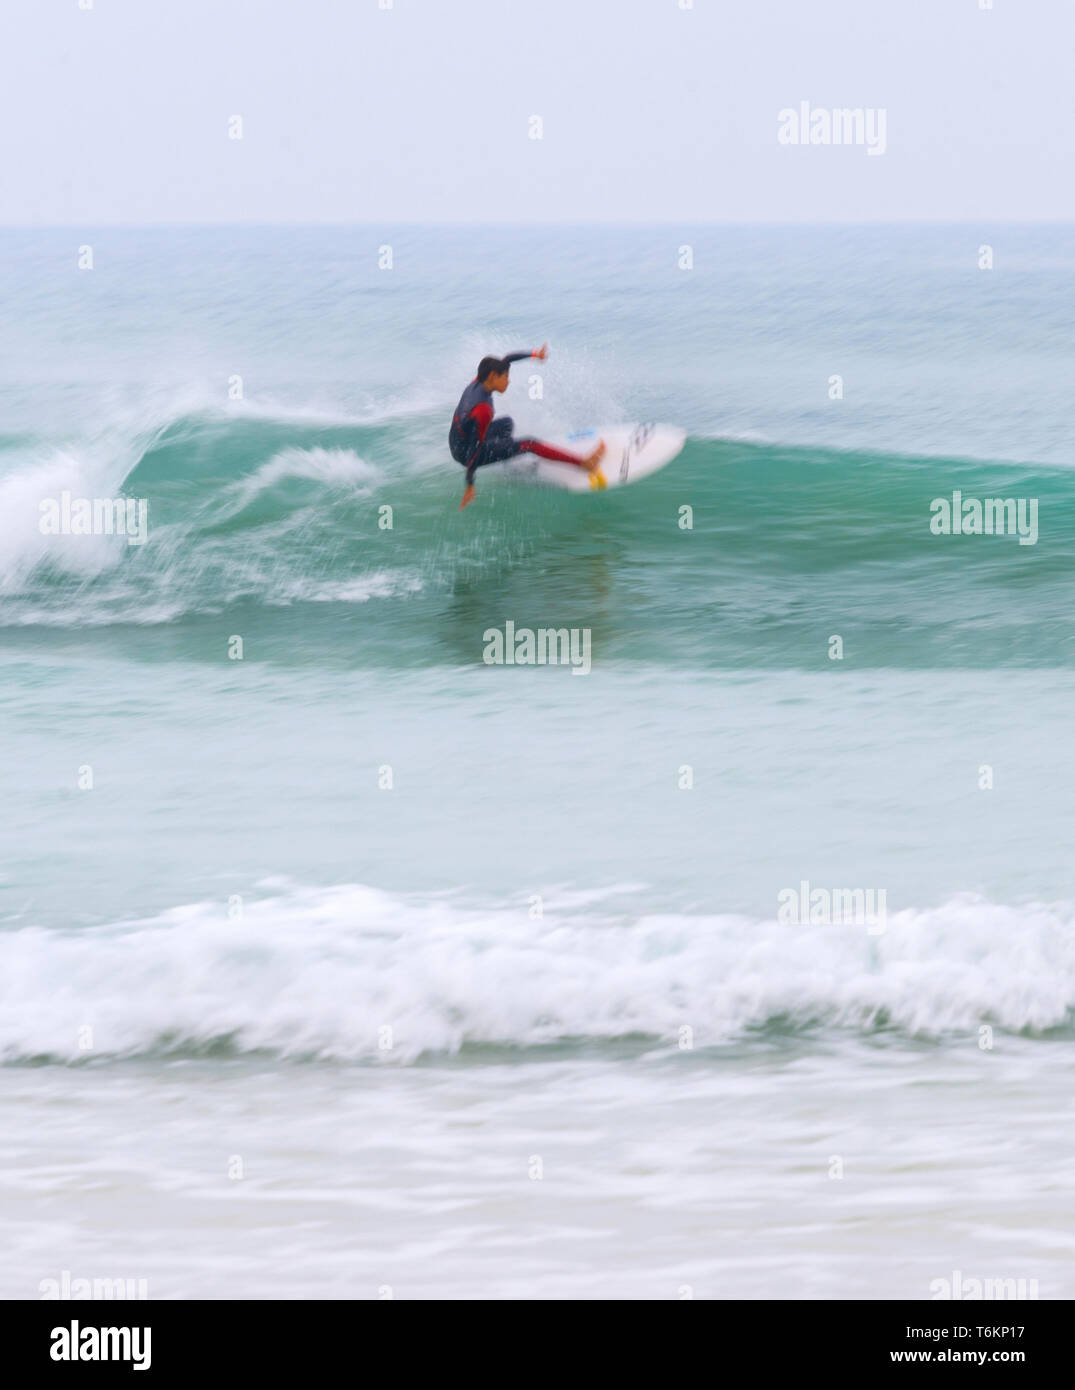 Die jungen Surfer in Neoprenanzug auf einer Welle in motion blur, Peniche, Portugal Stockfoto